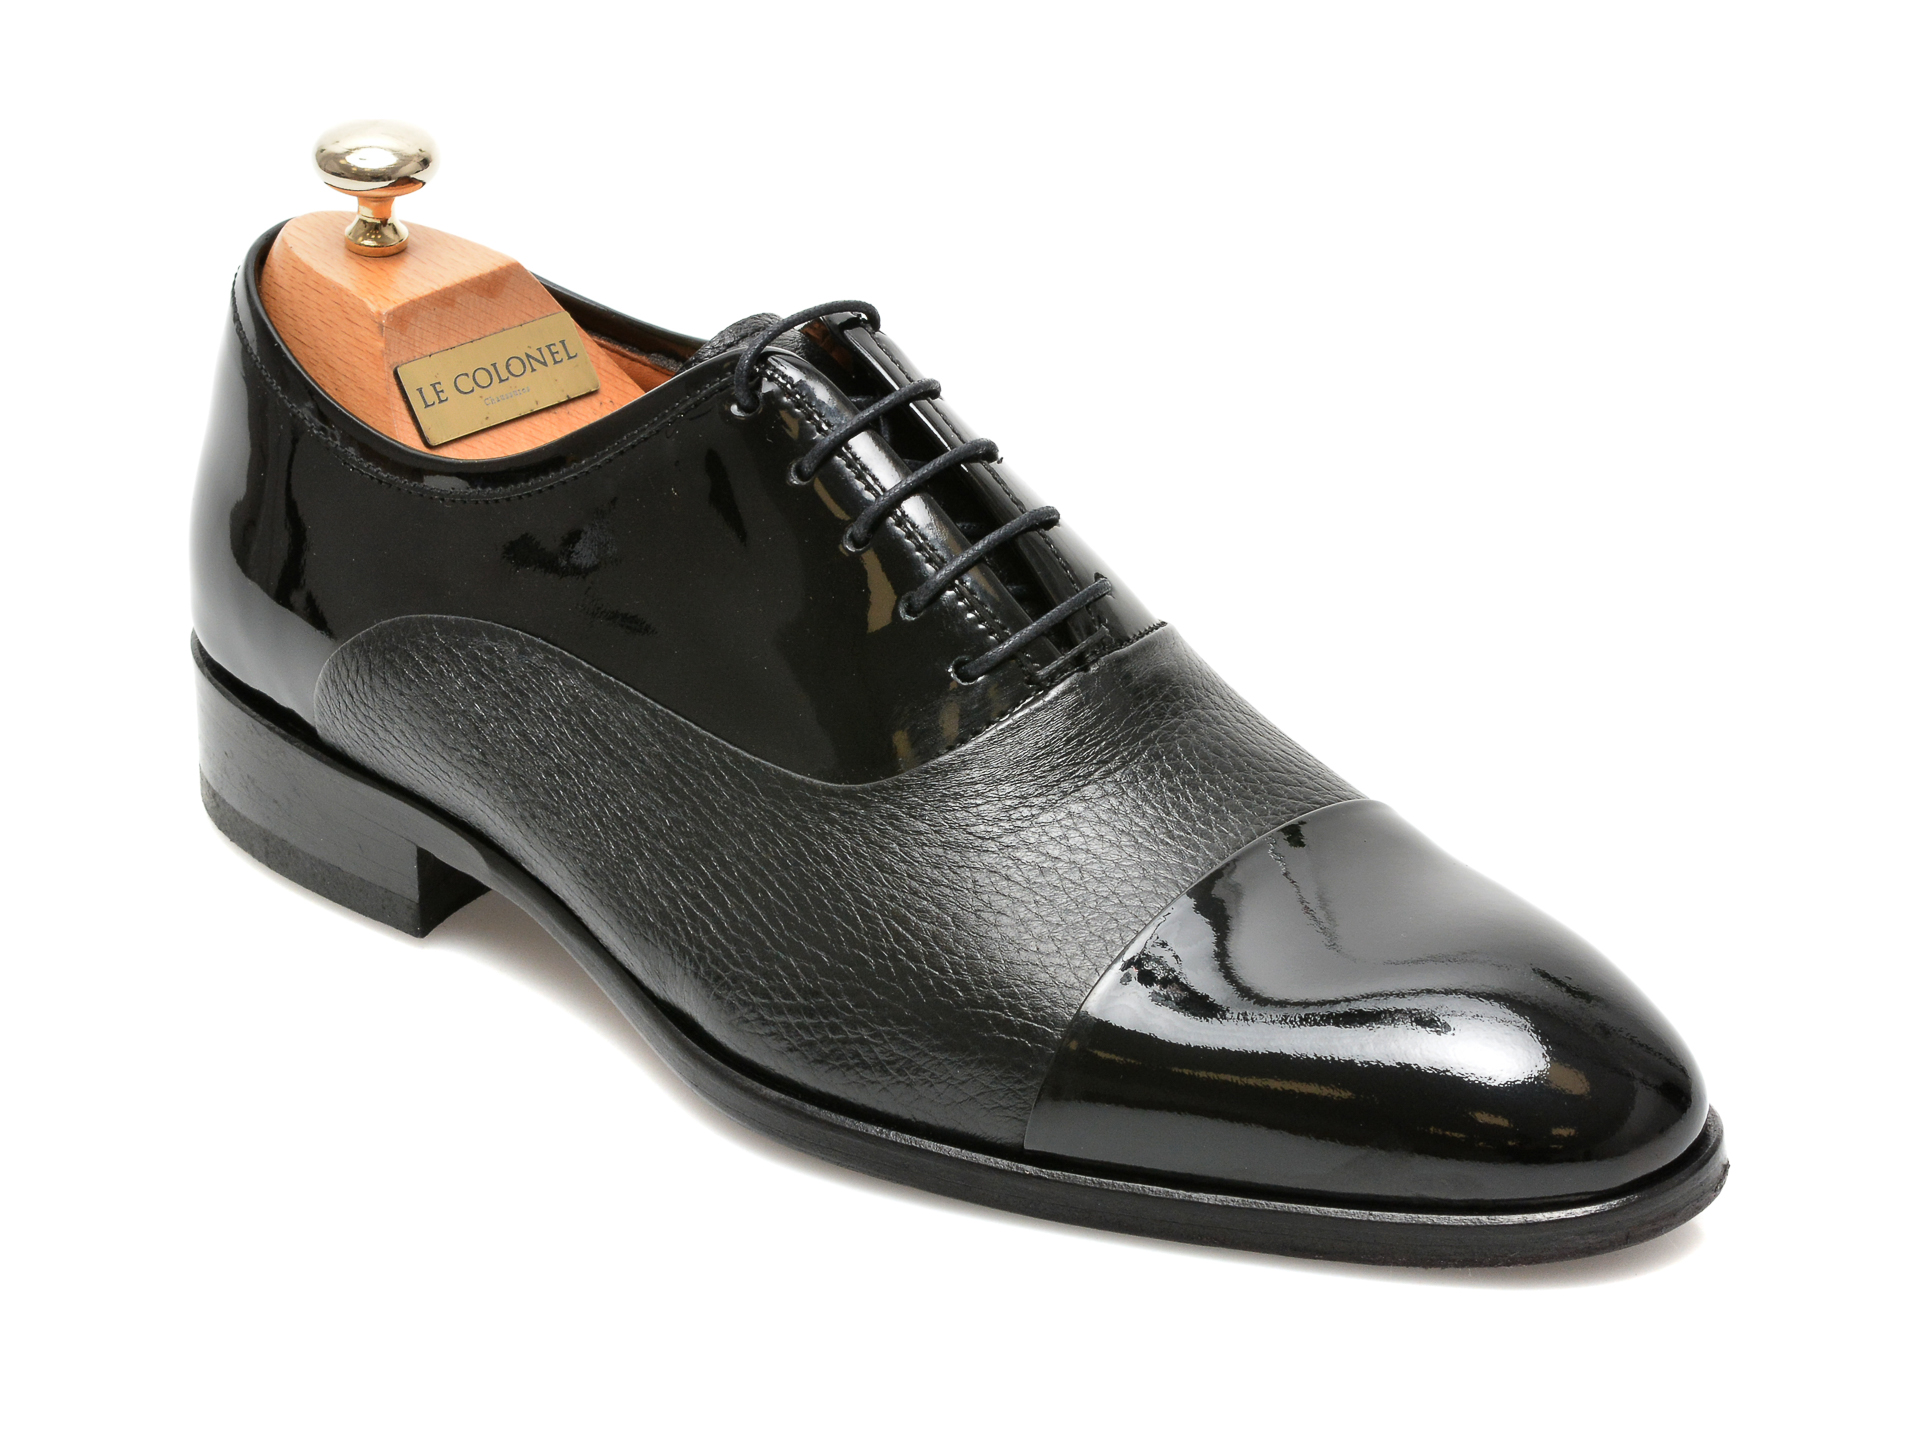 Pantofi LE COLONEL negri, 327117, din piele naturala lacuita Le Colonel Le Colonel